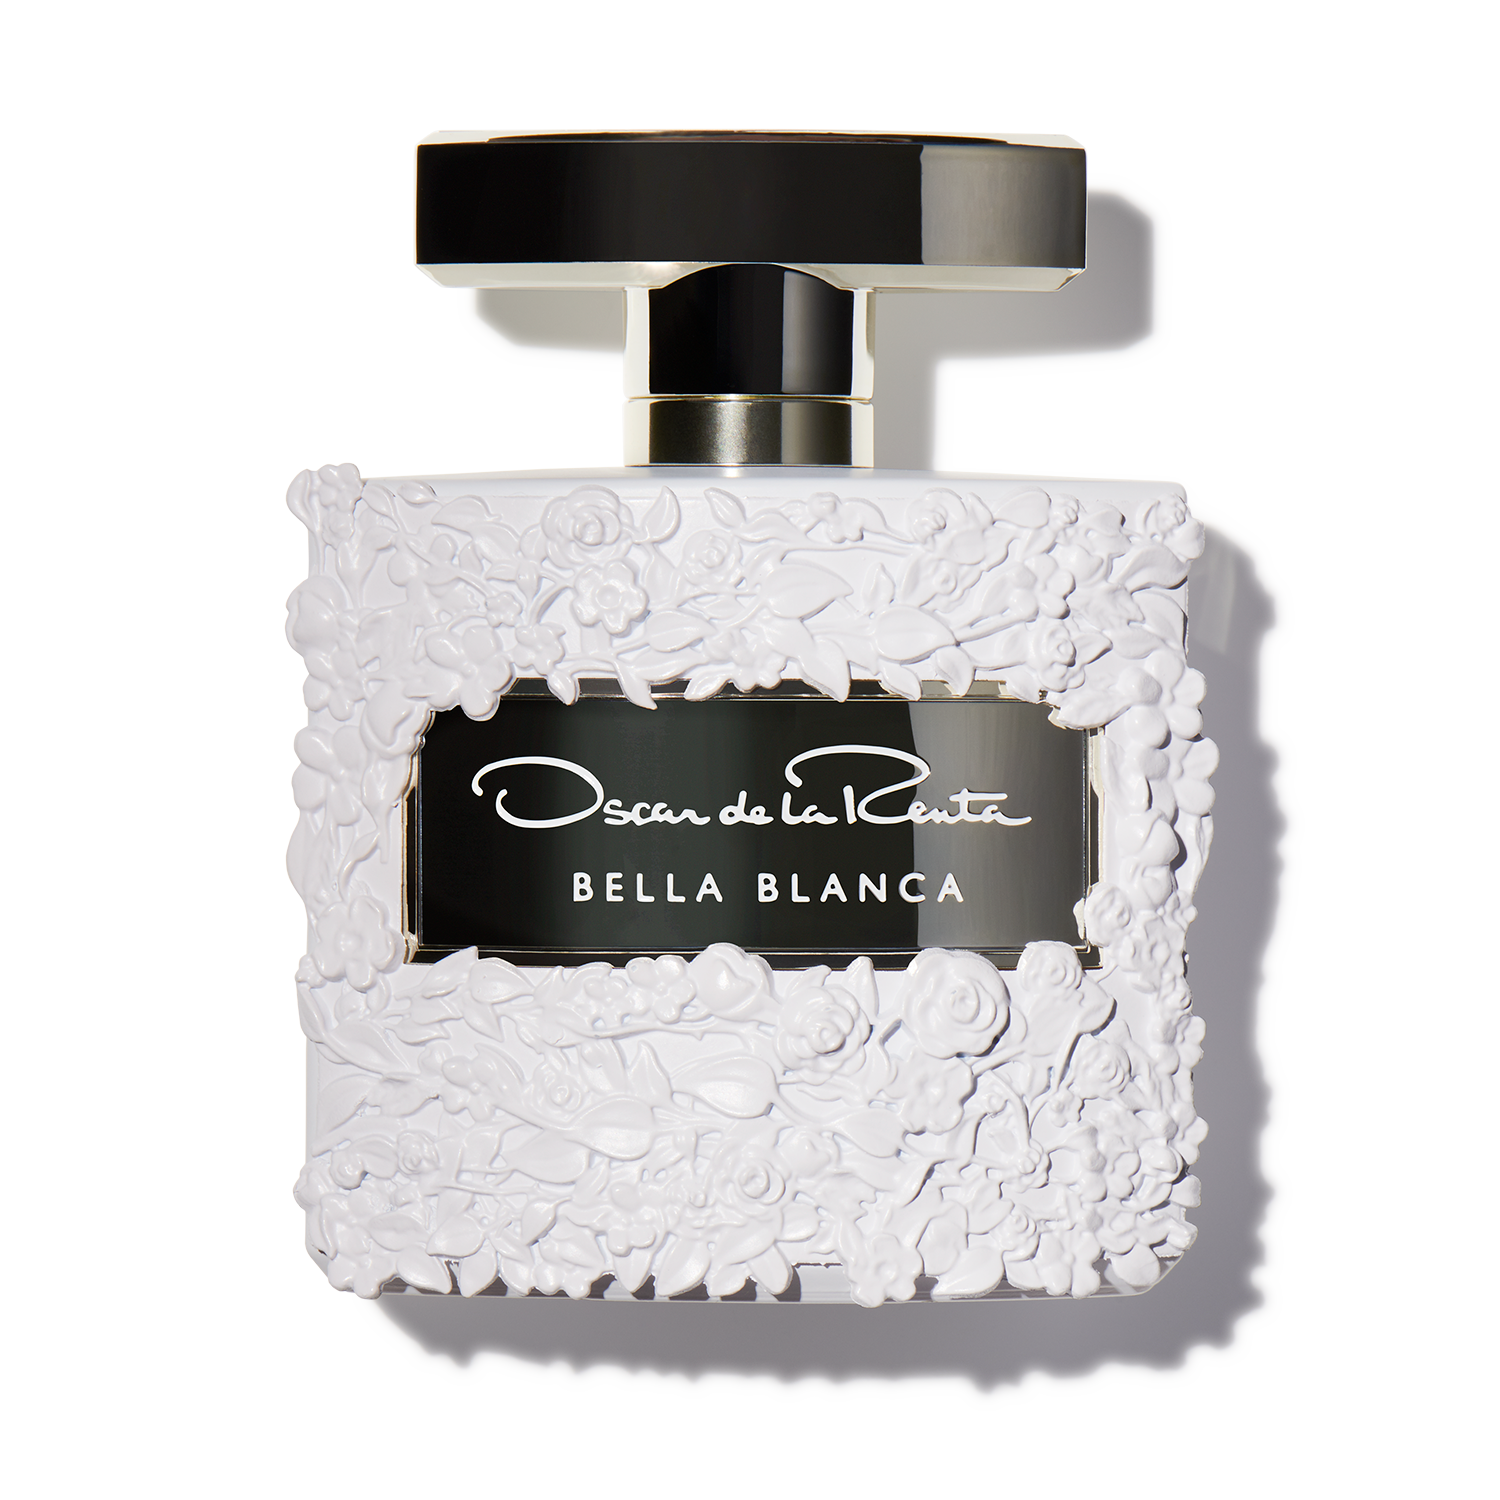 Oscar Perfume by Oscar De La Renta